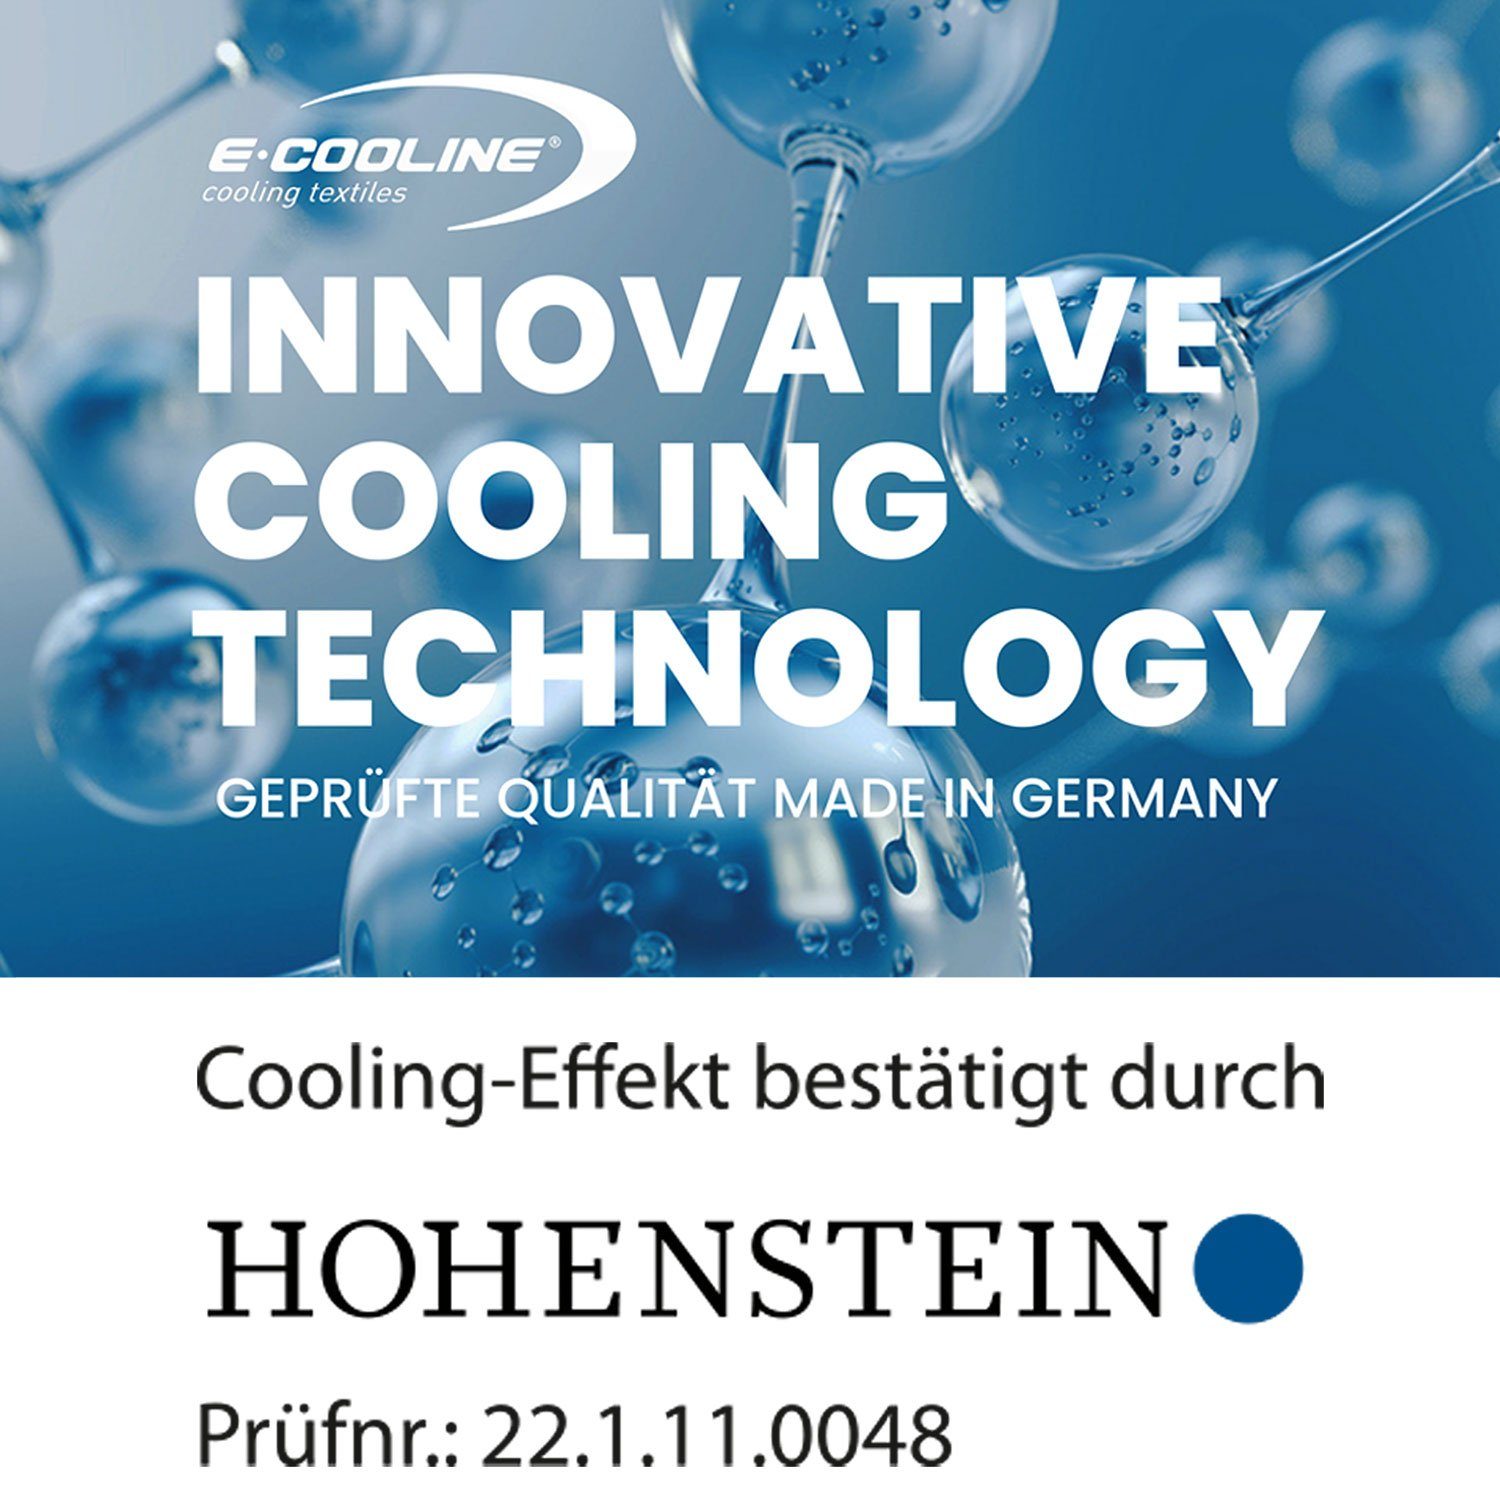 durch E.COOLINE - Armstulpen Klimaanlage Aktivierung PowerArmCooler Paar Kühlung zum SX3, mit Wasser aktiv kühlend, Anziehen 1